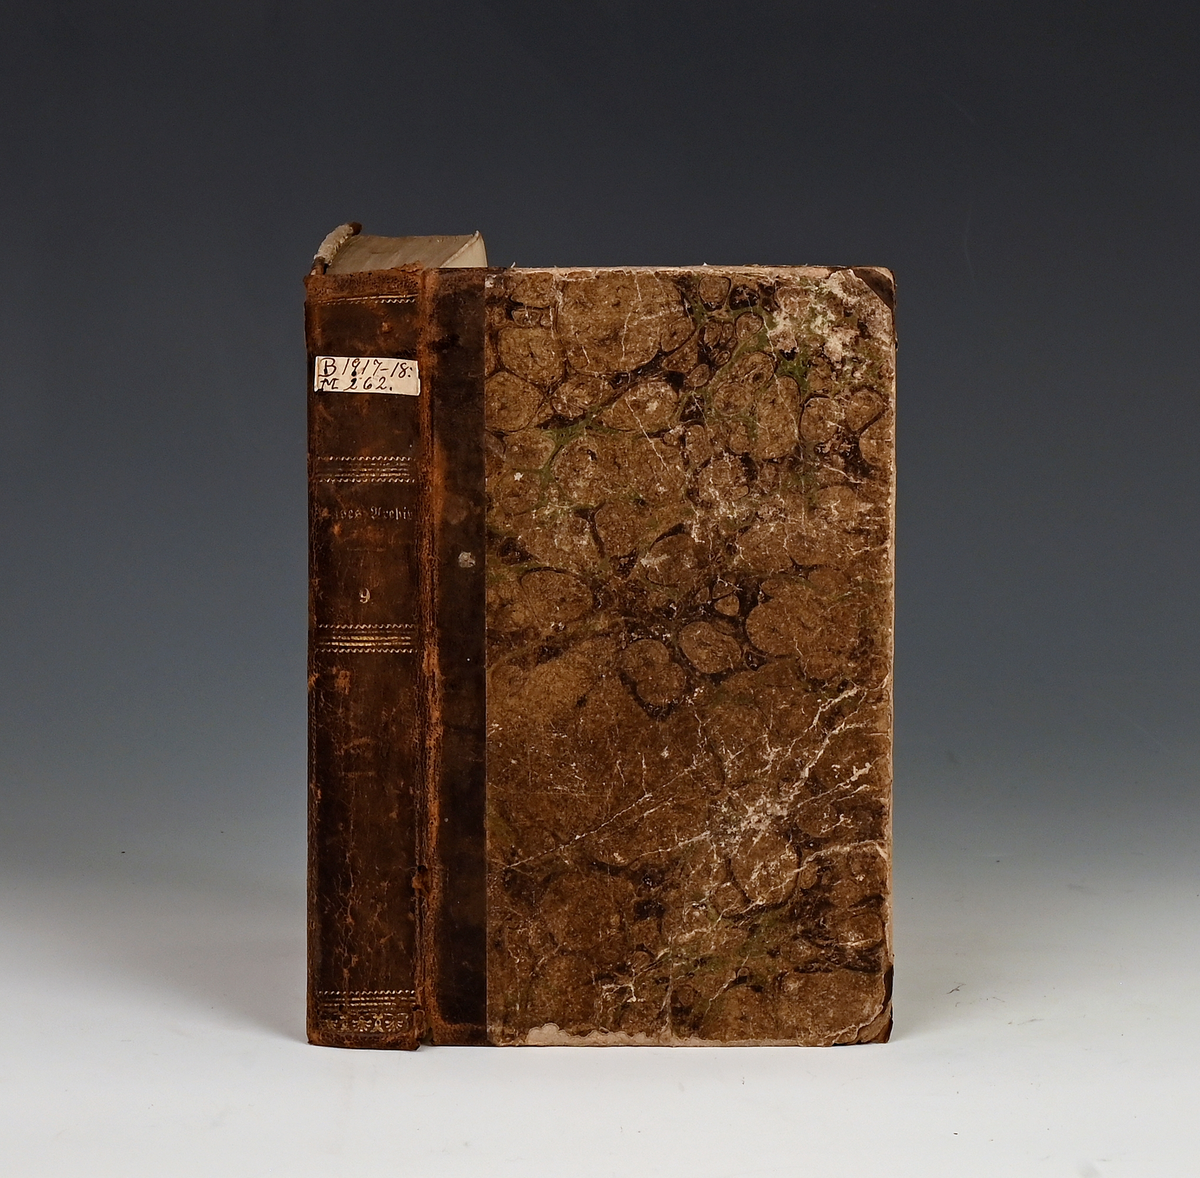 Prot: Riise, J. Chr., "Historisk-geograhisk archic." Niende bind Kbhv. 1841 2 bl. + 480 s. 8 vo.